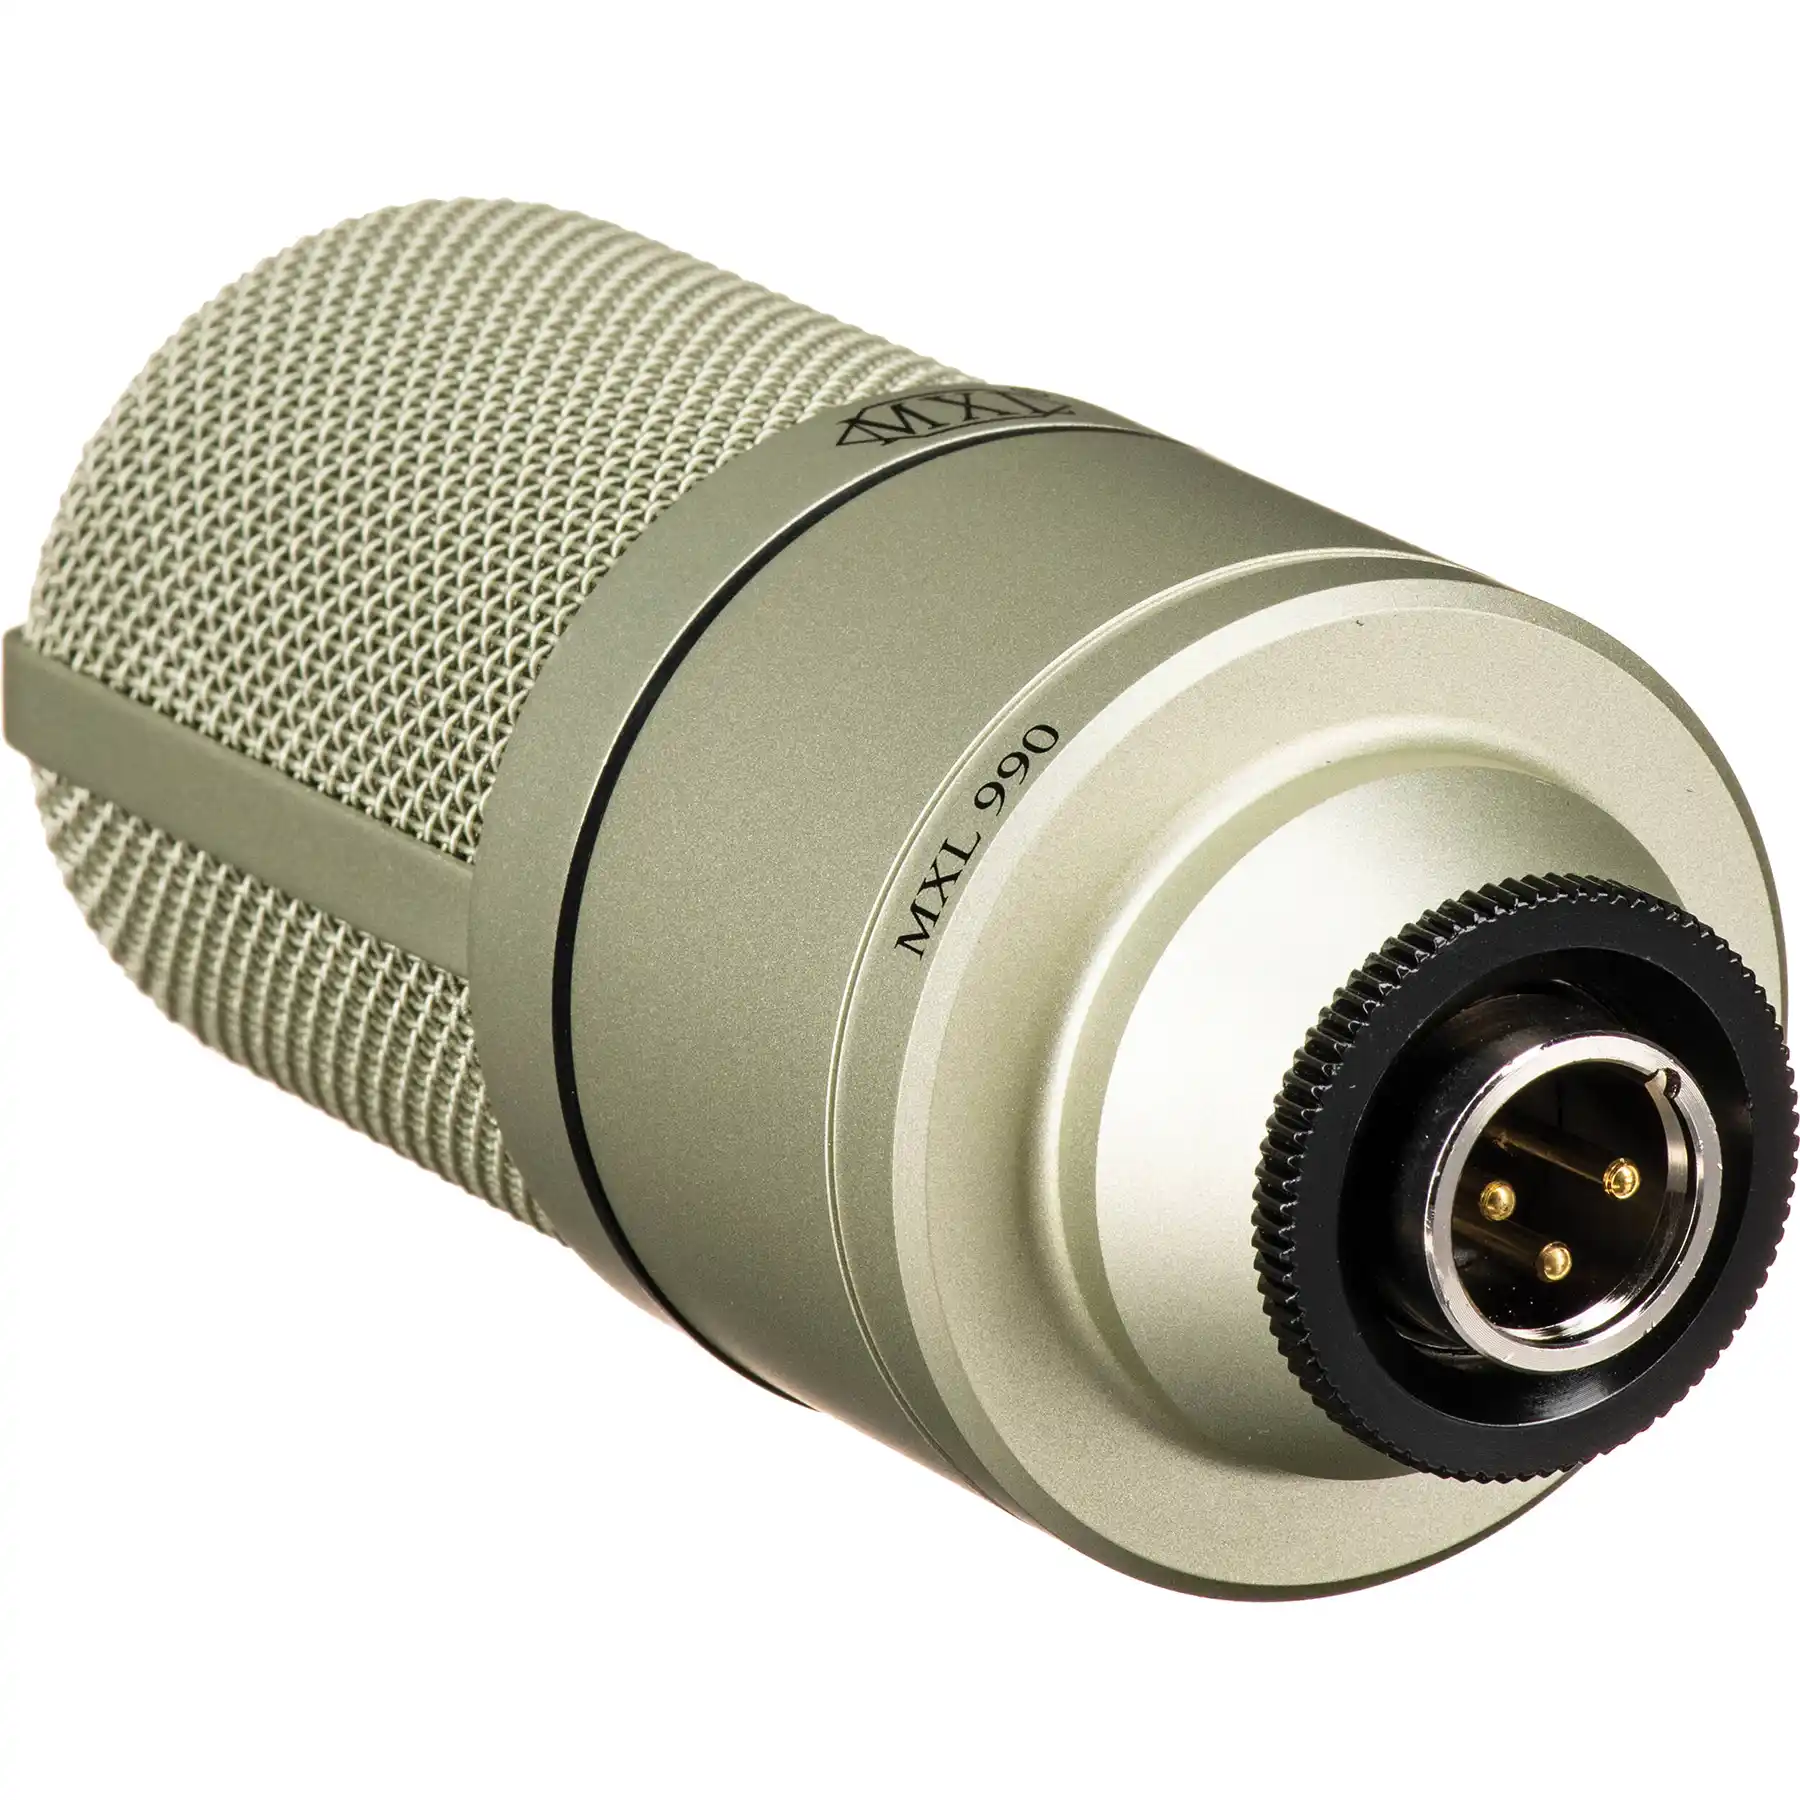 MXL 990 Stüdyo Condenser Mikrofon - Thumbnail